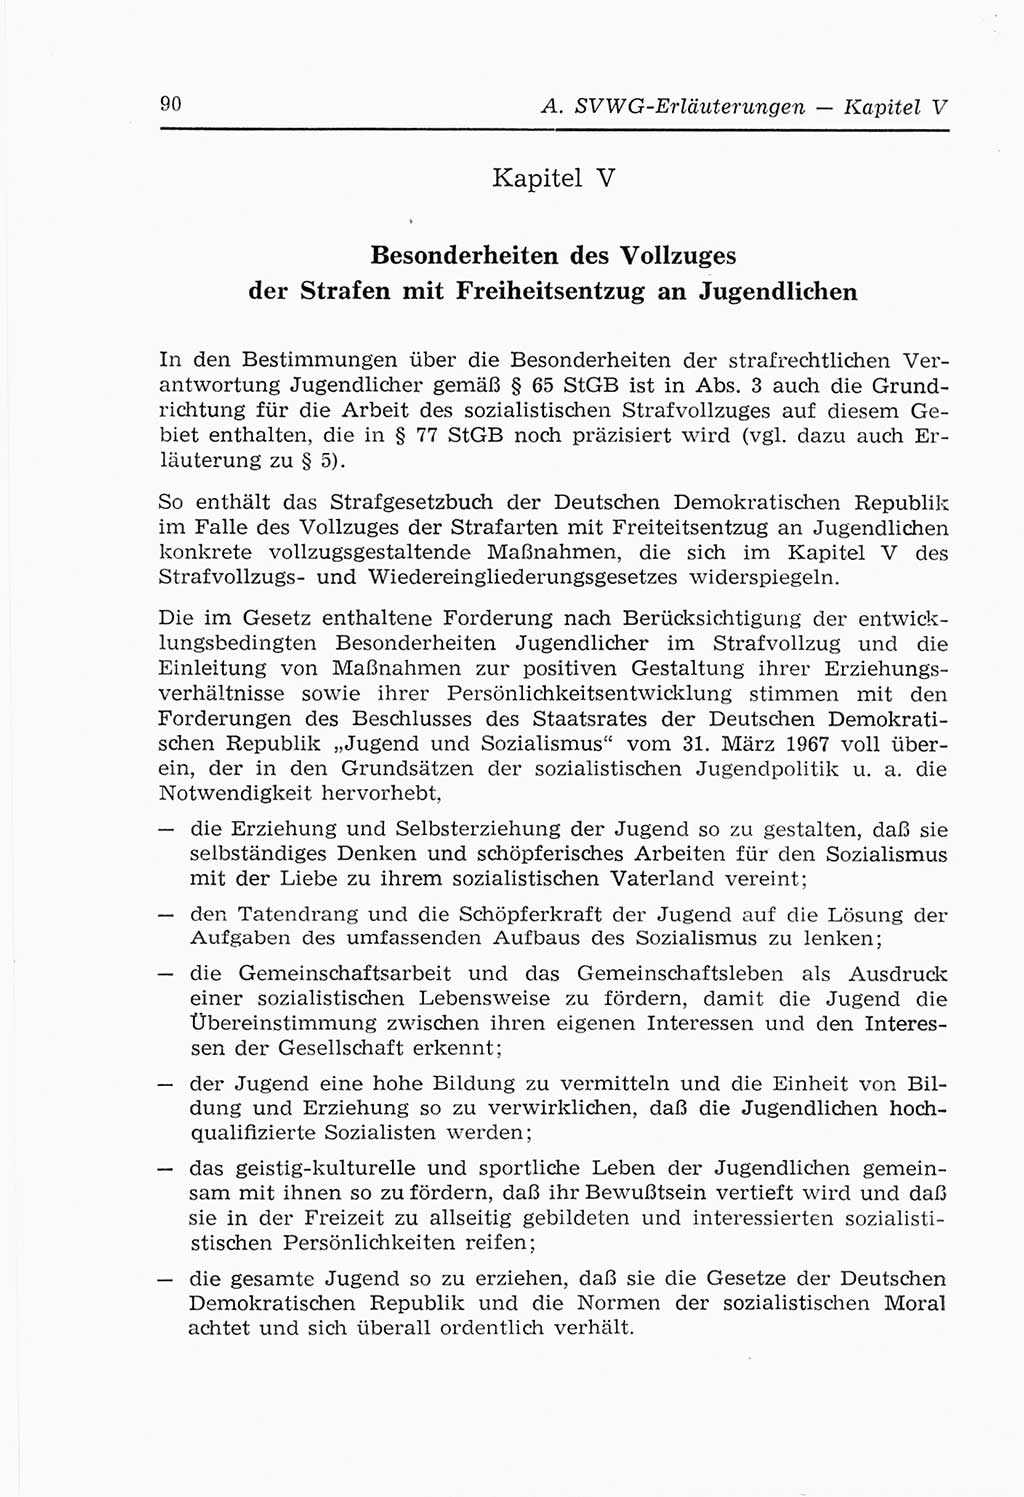 Strafvollzugs- und Wiedereingliederungsgesetz (SVWG) der Deutschen Demokratischen Republik (DDR) 1968, Seite 90 (SVWG DDR 1968, S. 90)